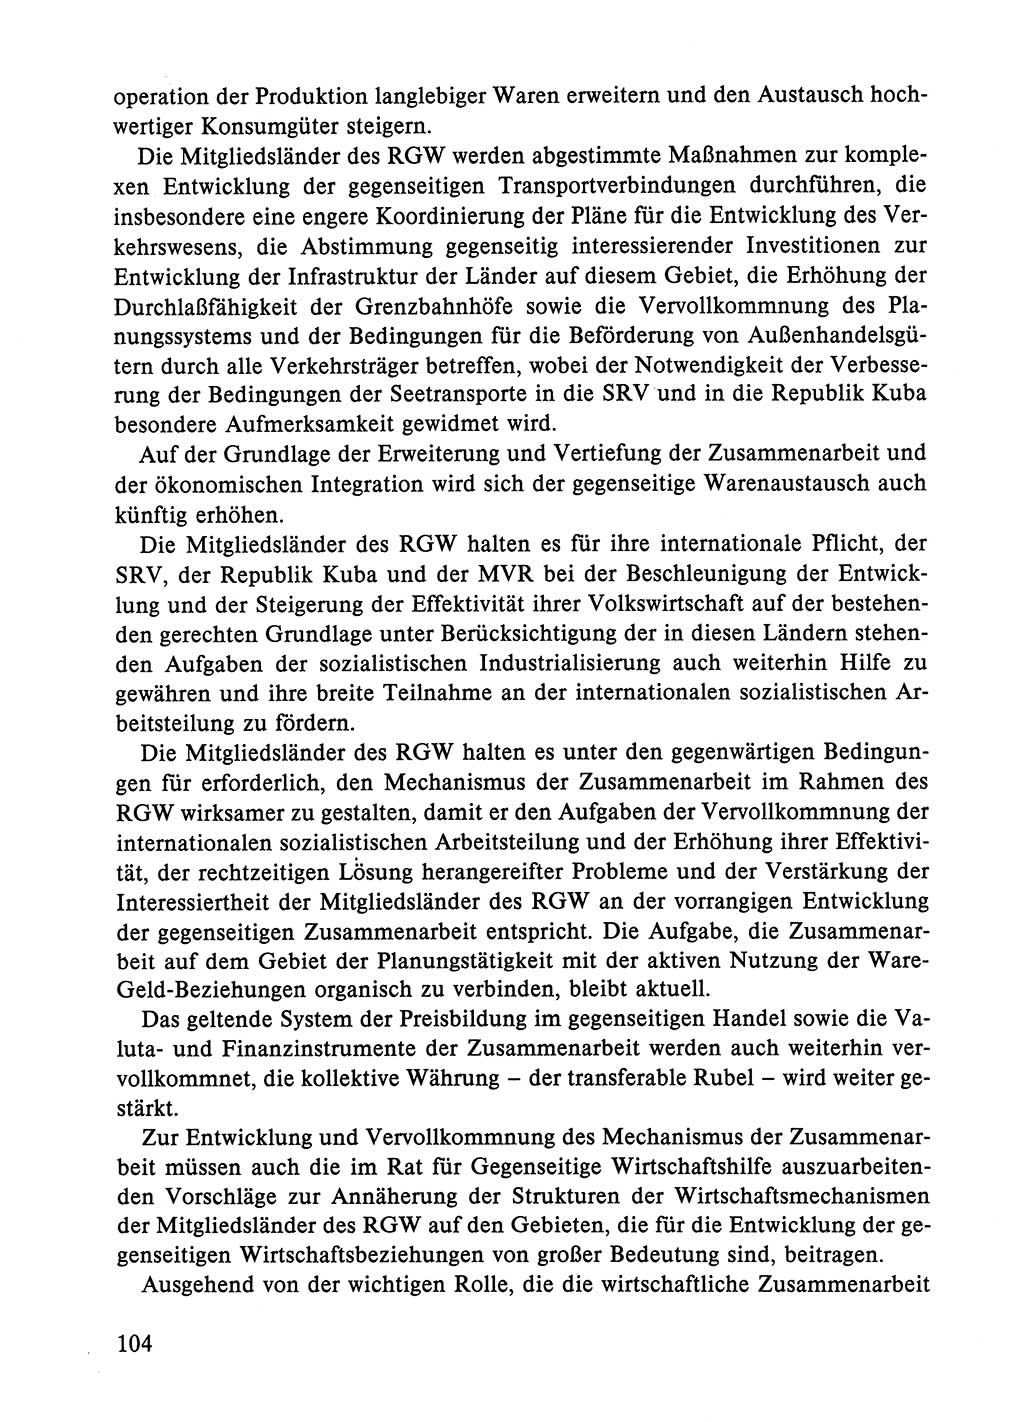 Dokumente der Sozialistischen Einheitspartei Deutschlands (SED) [Deutsche Demokratische Republik (DDR)] 1984-1985, Seite 323 (Dok. SED DDR 1984-1985, S. 323)